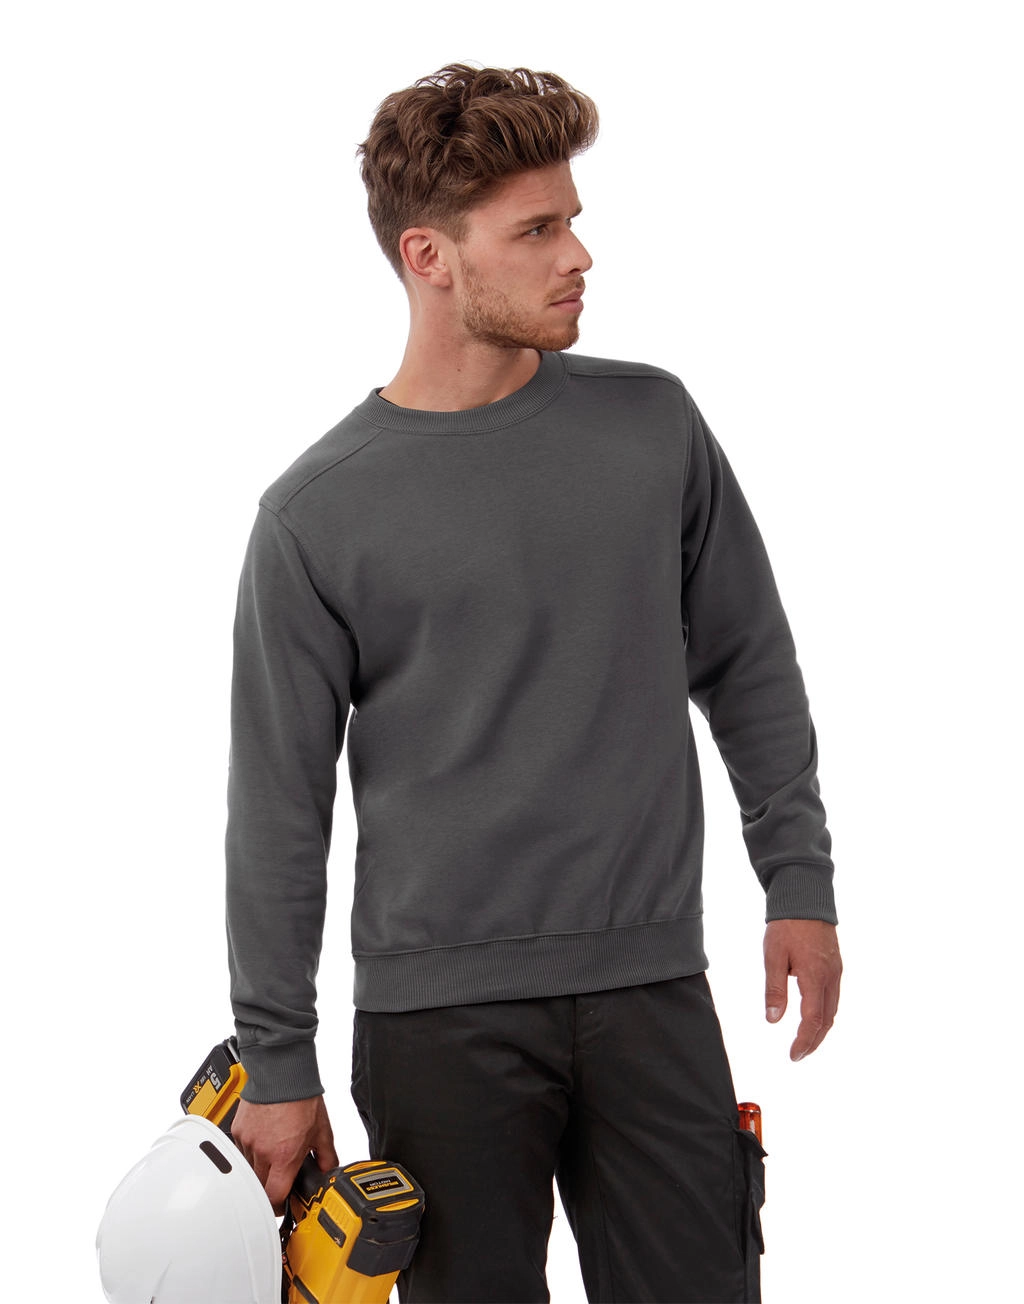 Workwear Sweater - WUC20 Fair Wear geeignet für die Bestickung und Bedruckung